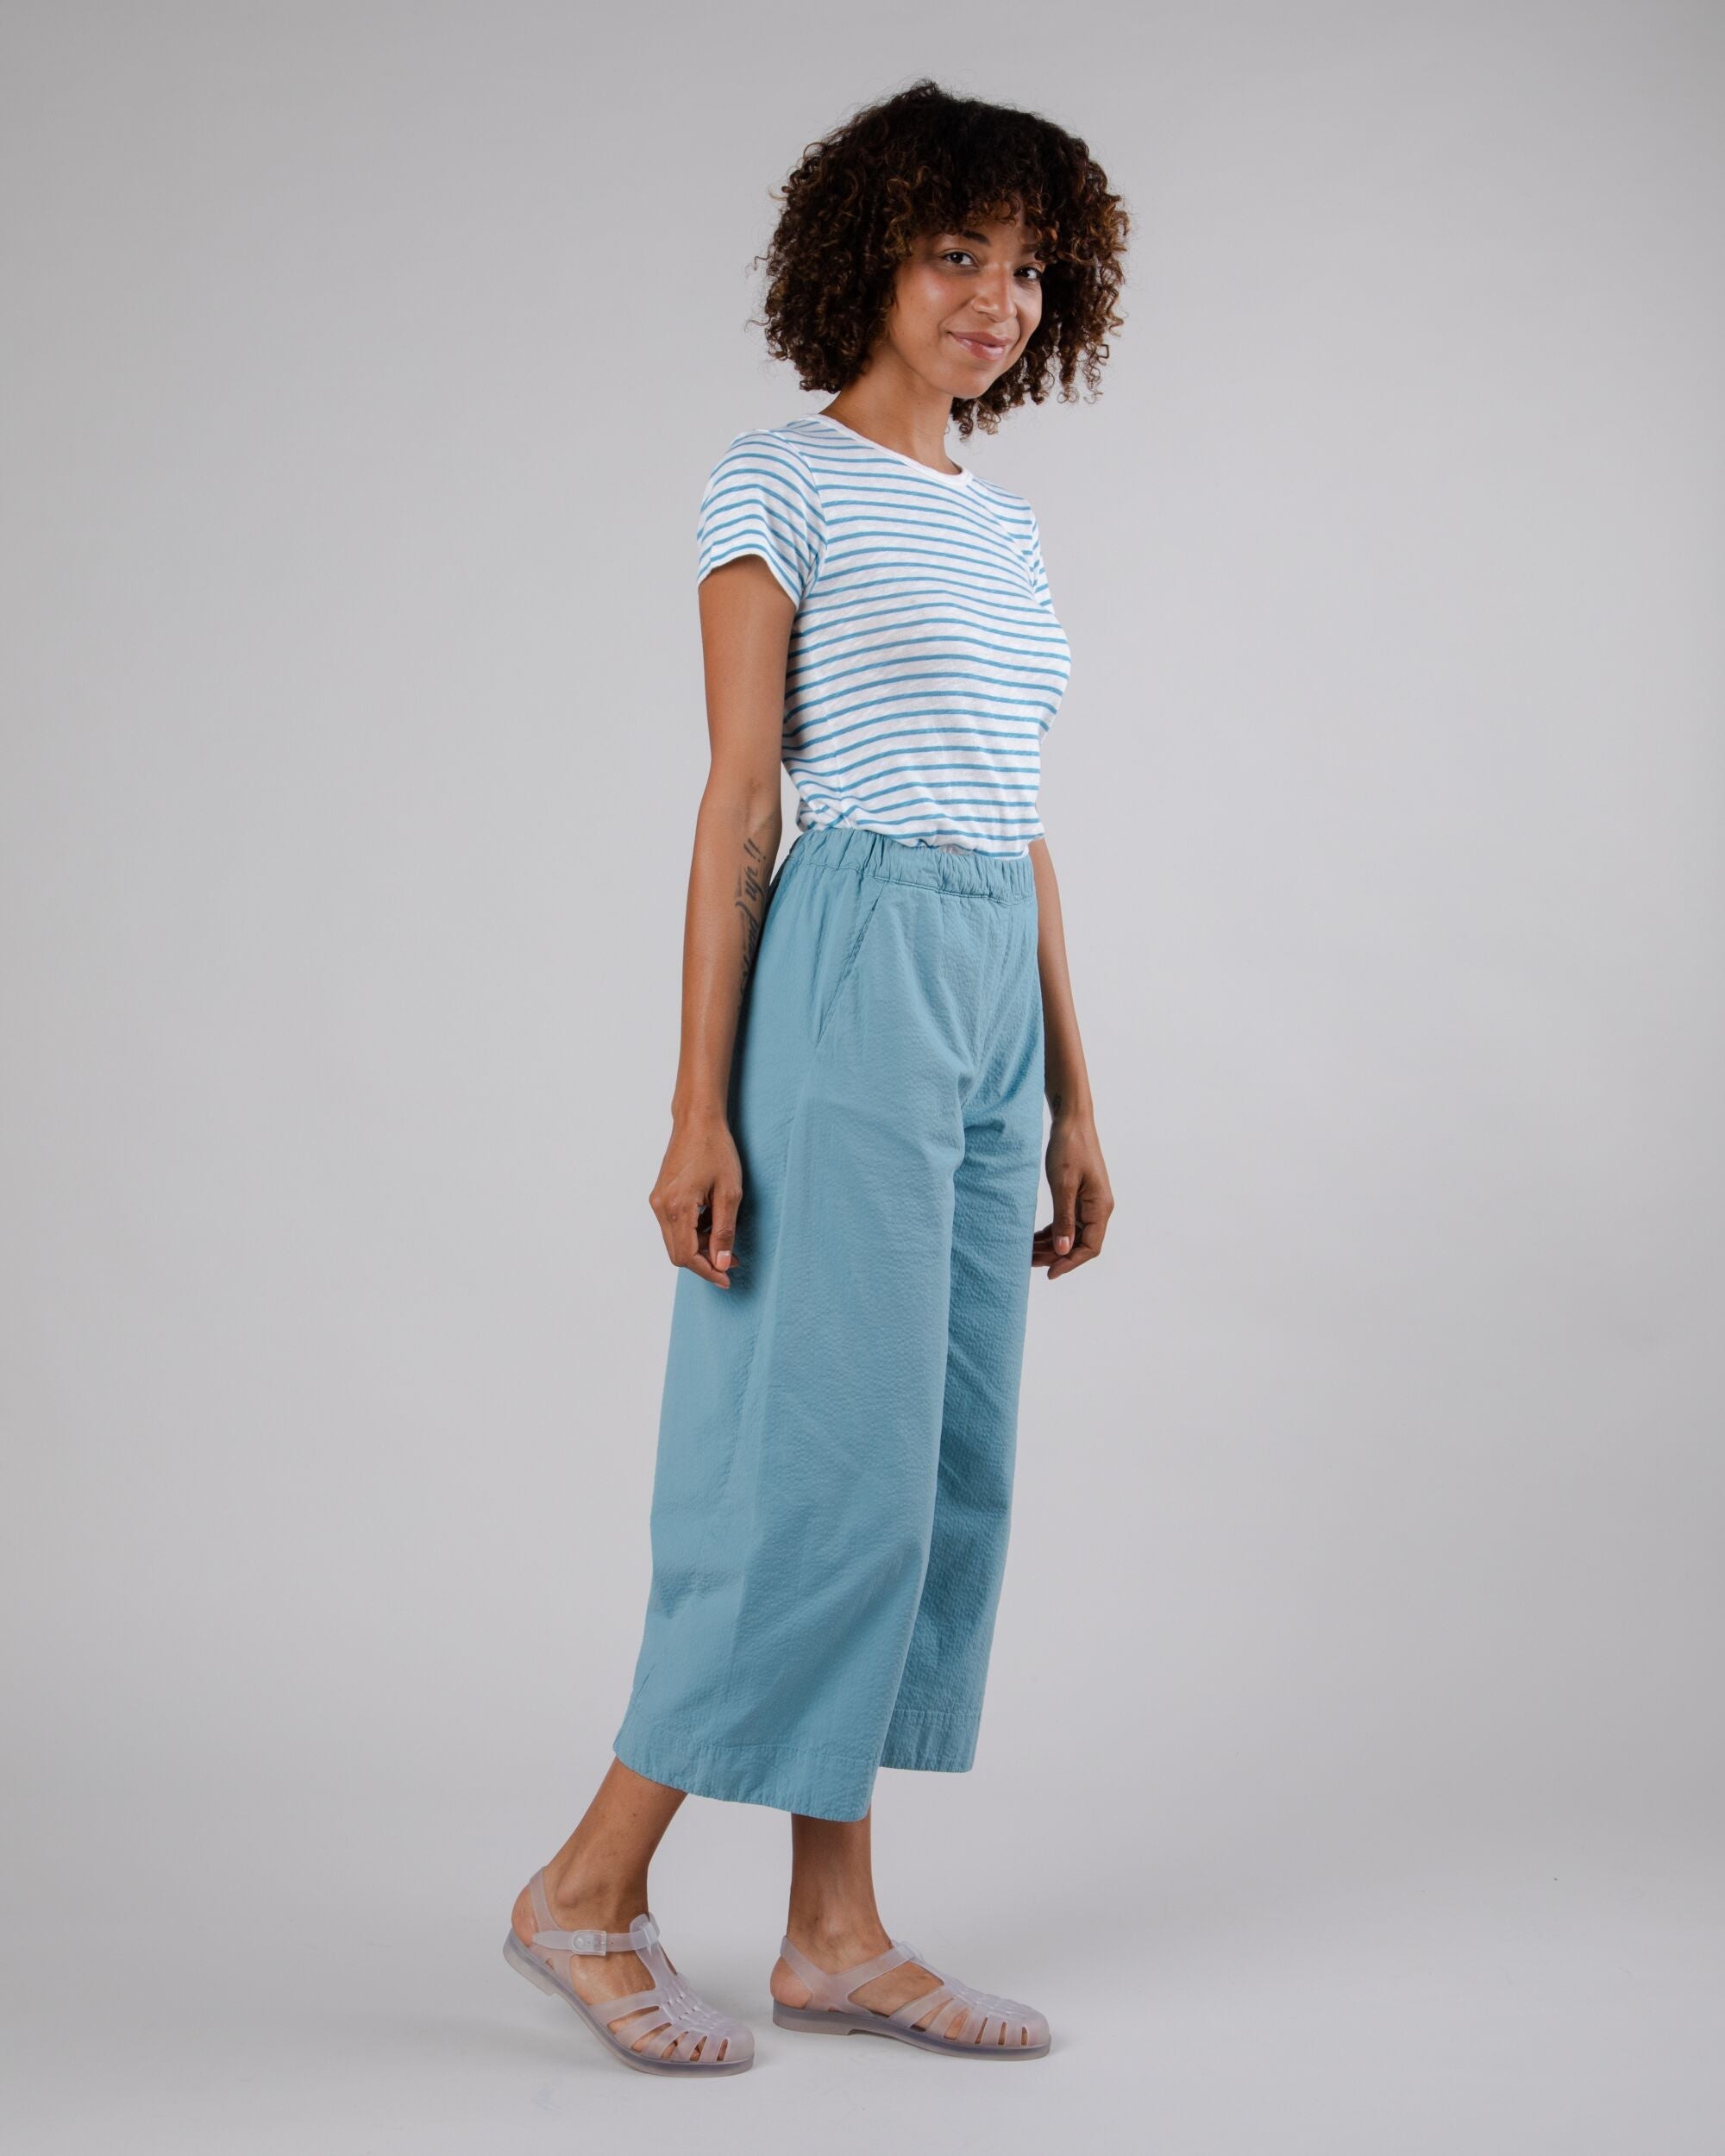 Pantalon Picnic oversize bleu océan en coton biologique par Brava Fabrics